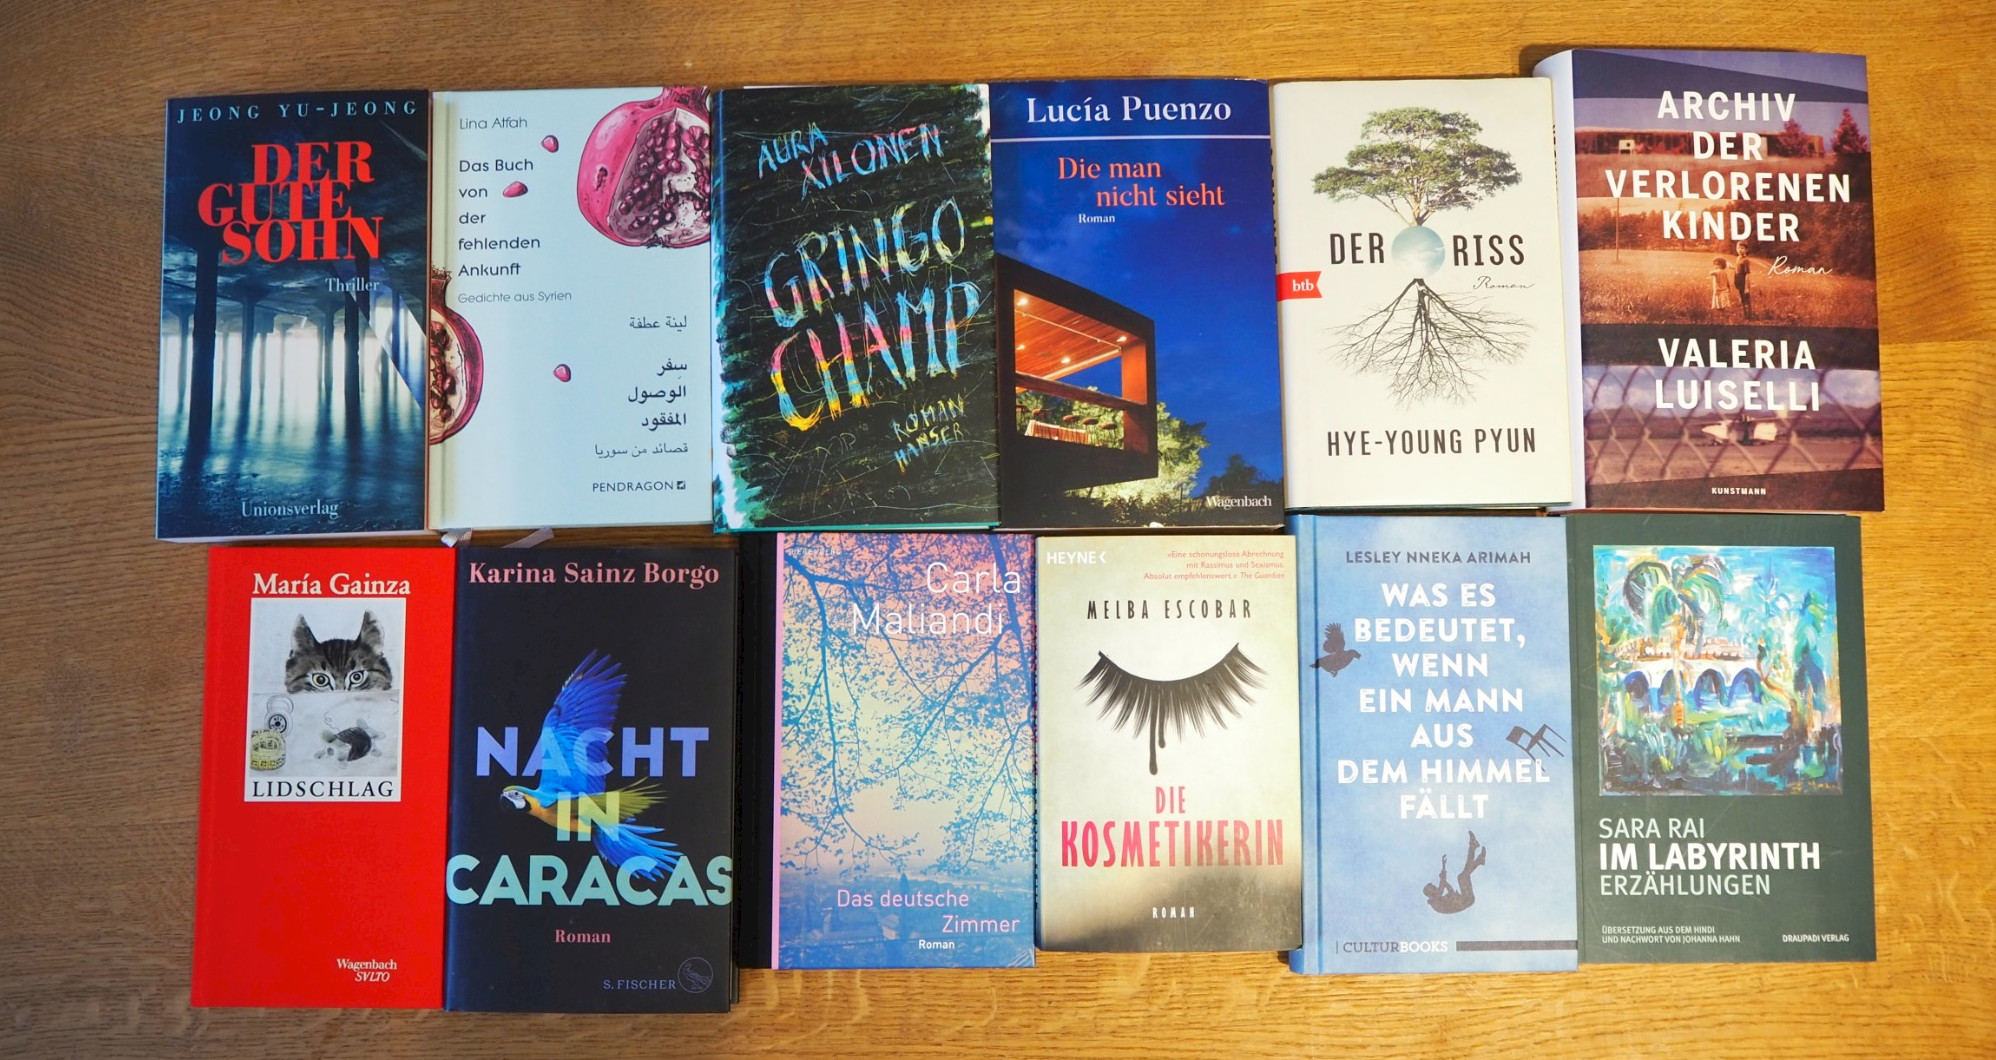 Diese 12 Bücher sind für den Liberaturpreis 2020 nominiert